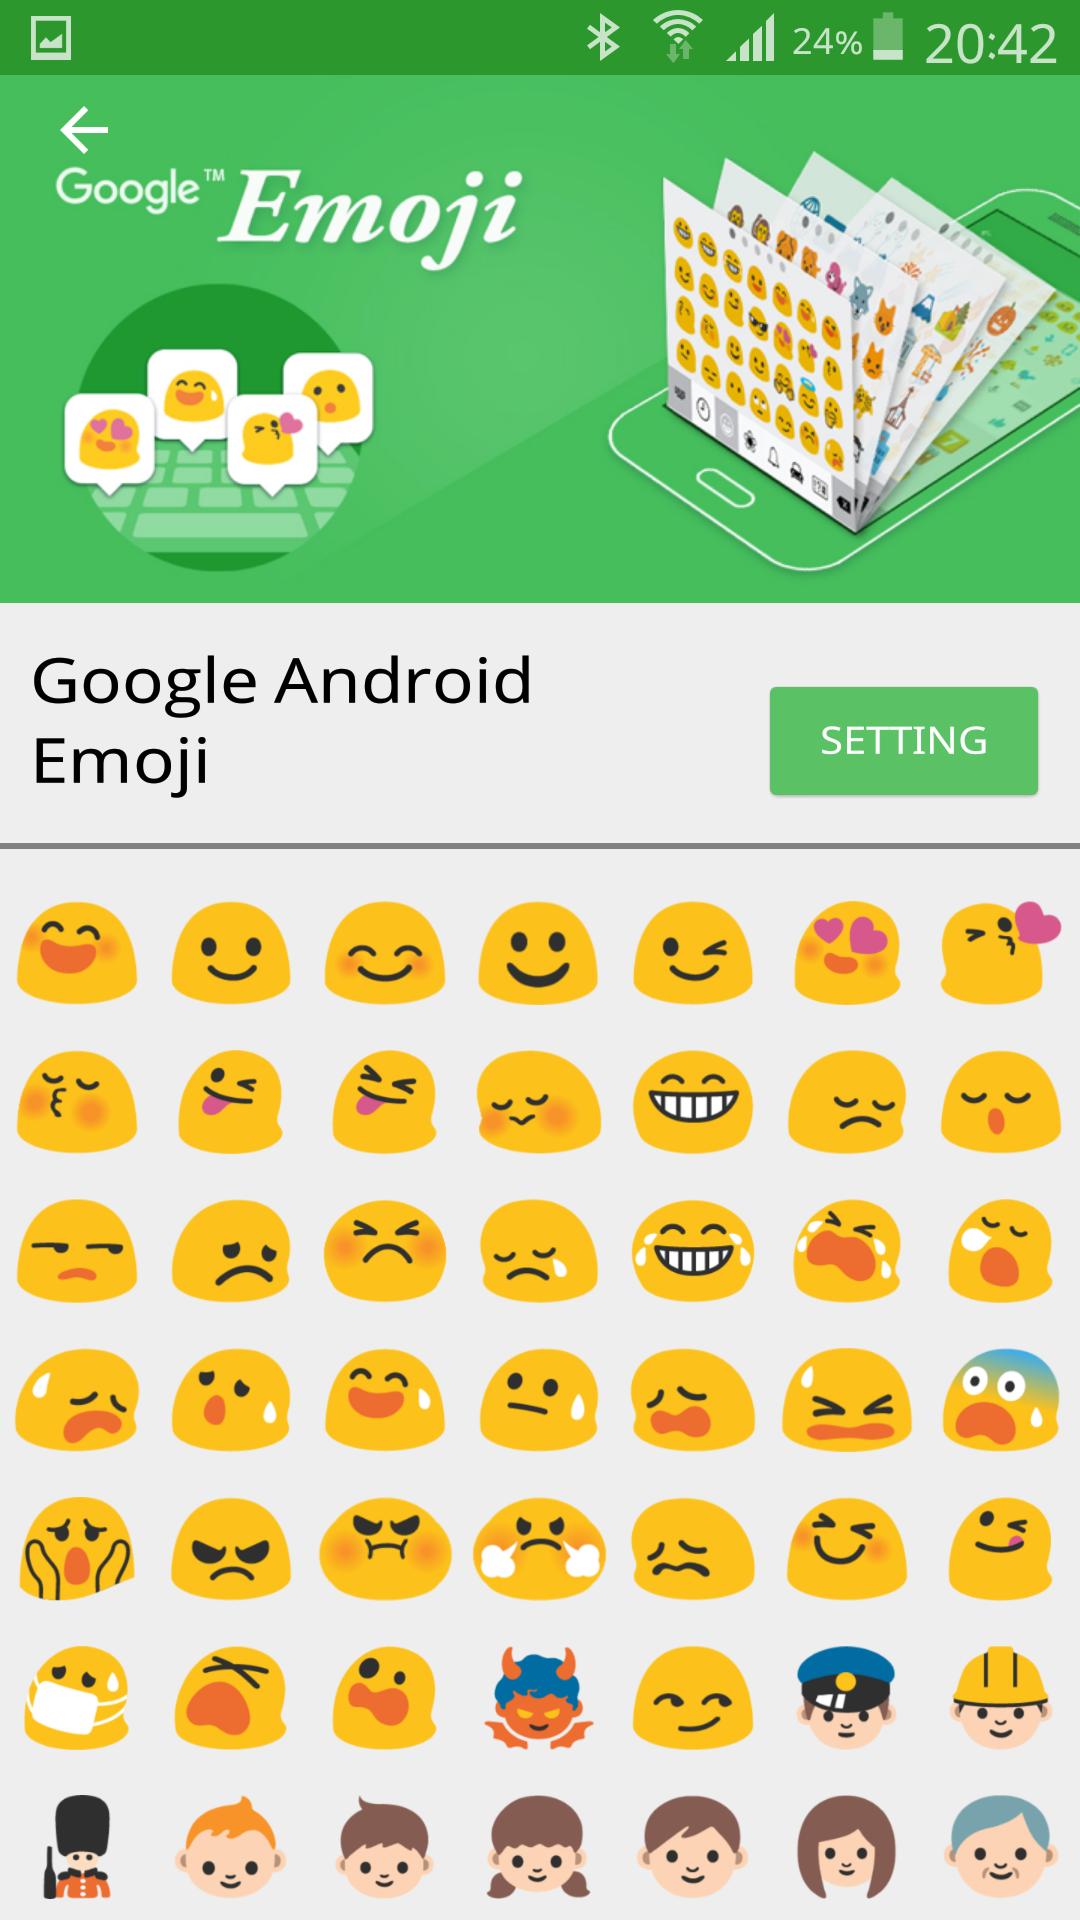 Emoji Font Pro cho Android mang đến cho bạn sự đa dạng về biểu tượng Emoji với hàng ngàn biểu tượng độc đáo và mới lạ. Tải xuống ngay để thỏa sức sáng tạo và tạo nên những bài đăng ấn tượng trên mạng xã hội.